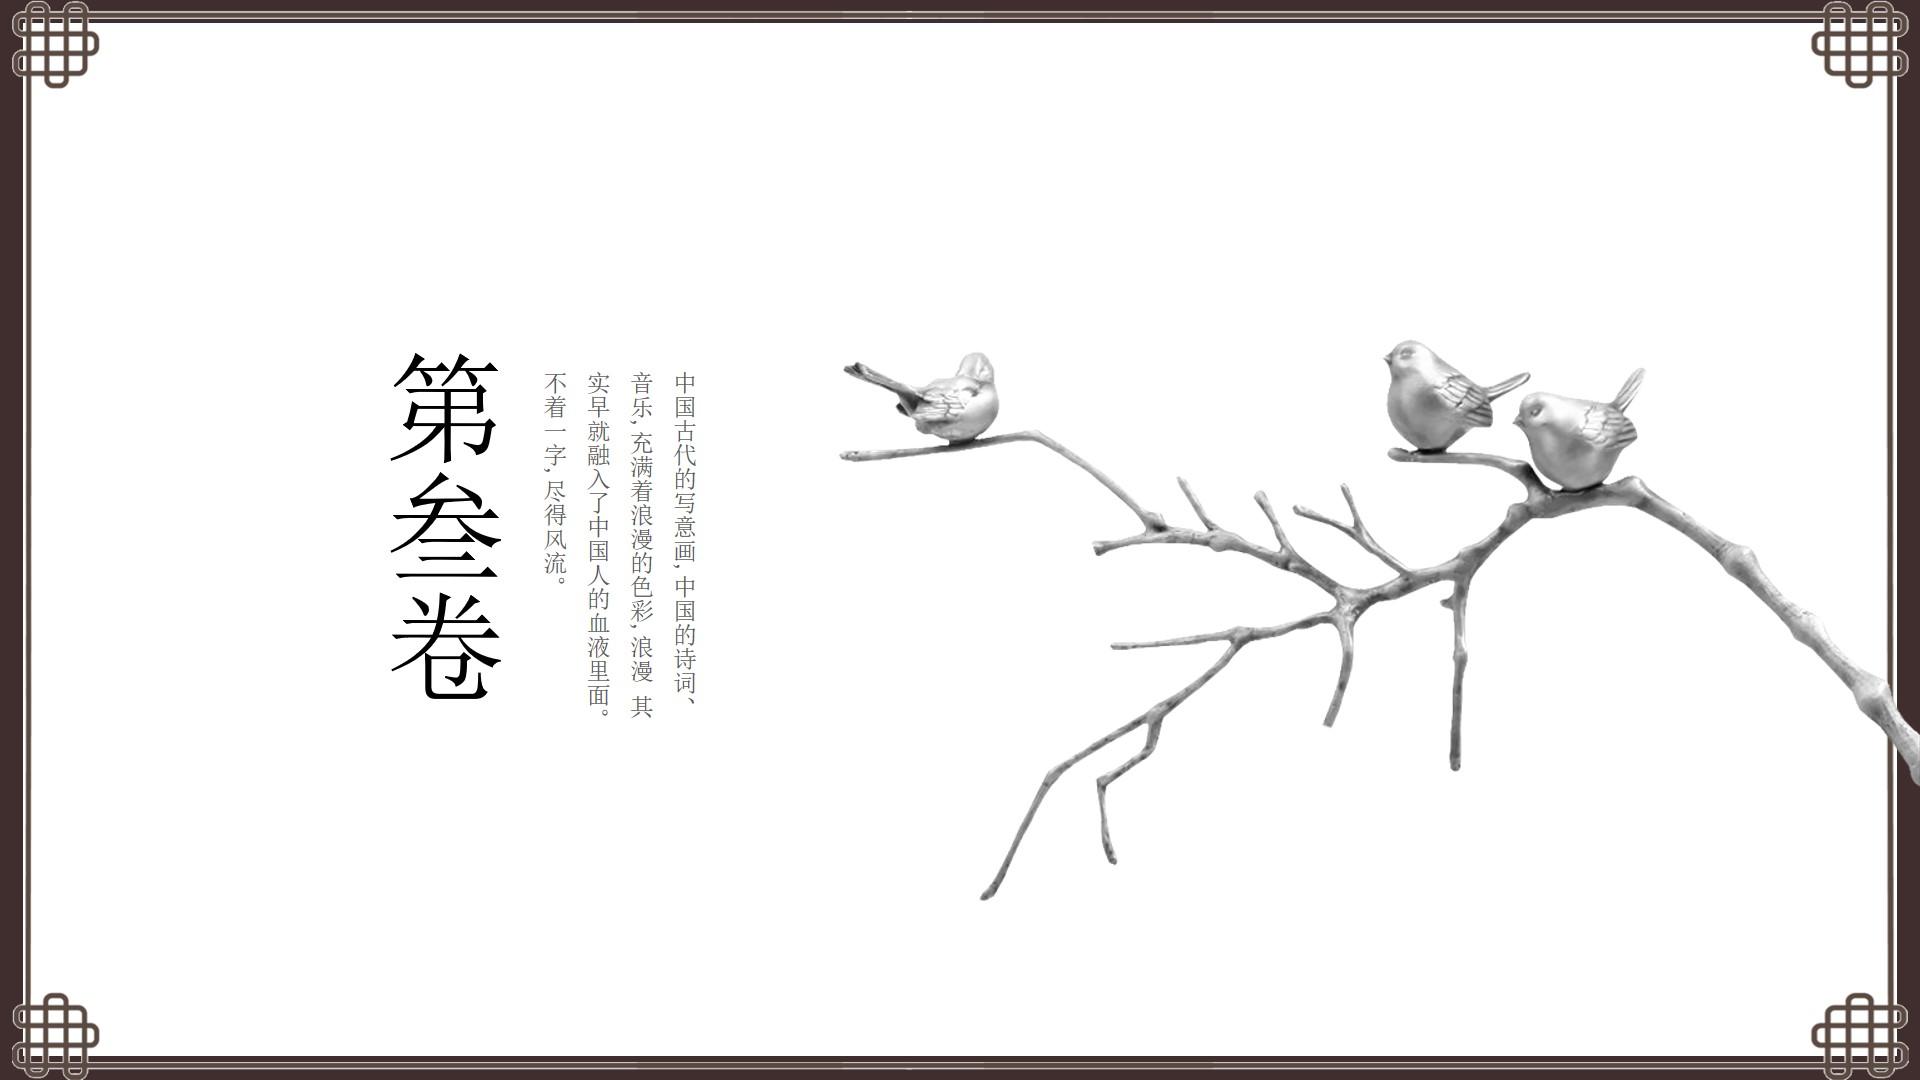 教育教学黑色灰色白色简洁中国风中国人音乐色彩血液诗词云素材PPT模板1672580350294